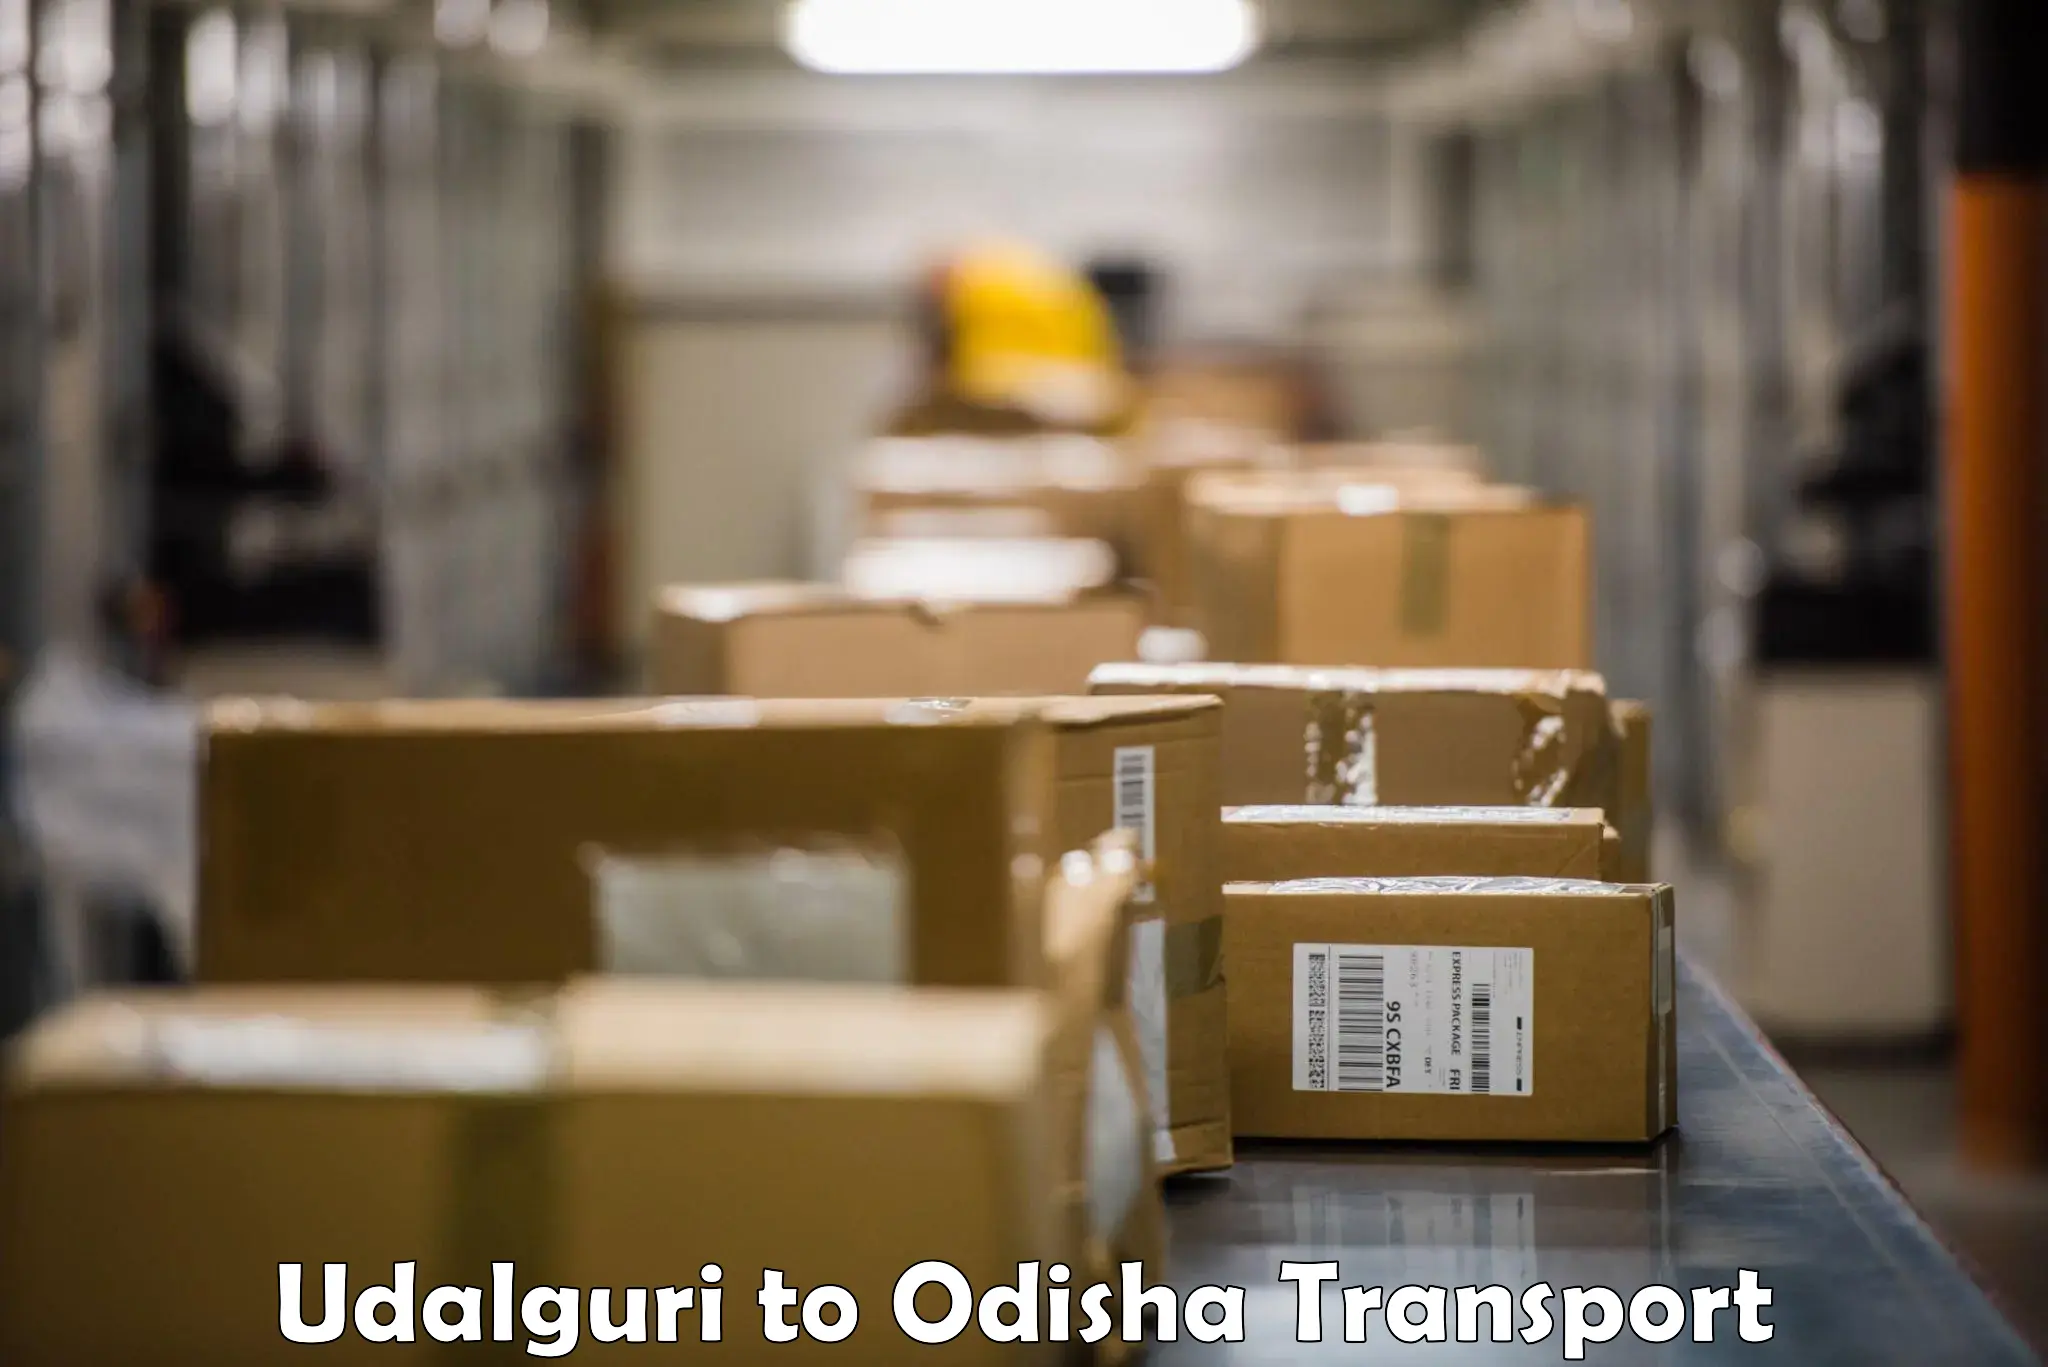 Lorry transport service Udalguri to Aul